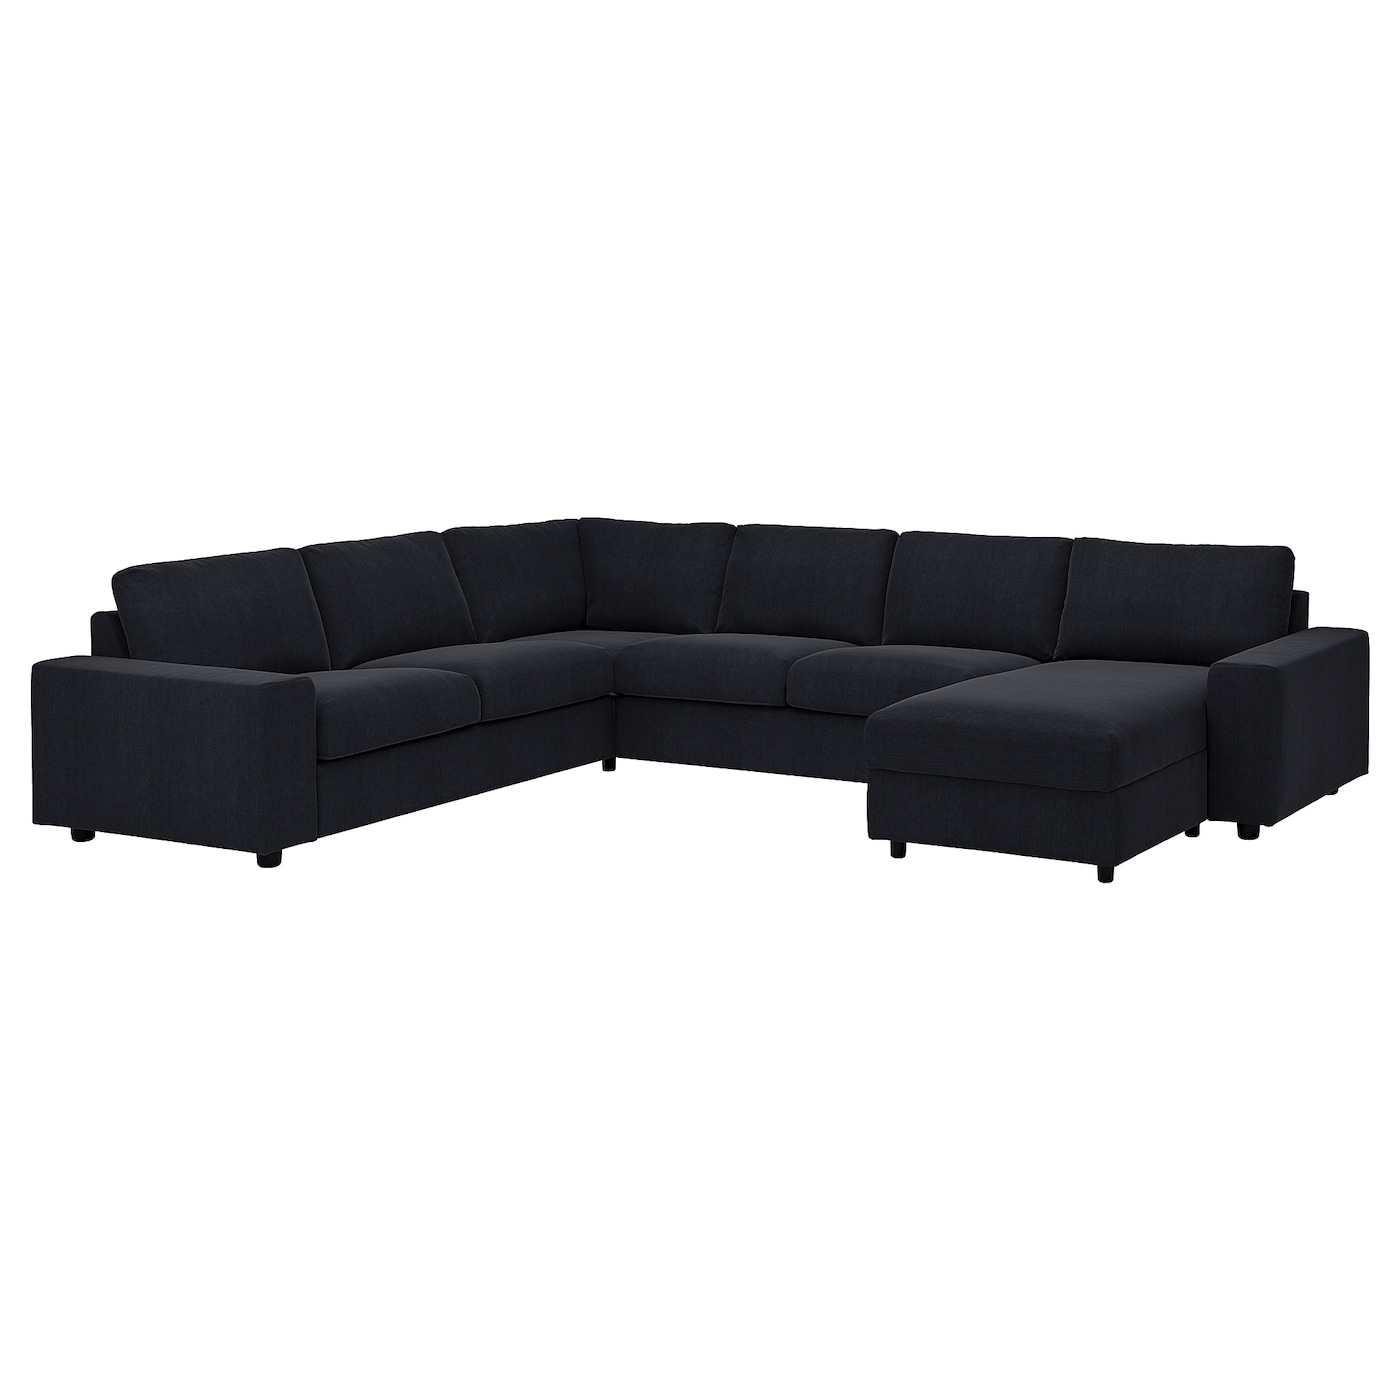 ВИМЛЕ Диван угловой, 5-местный. диван+диван, с широкими подлокотниками/Saxemara черно-синий VIMLE IKEA диван офисный угловой стандартный